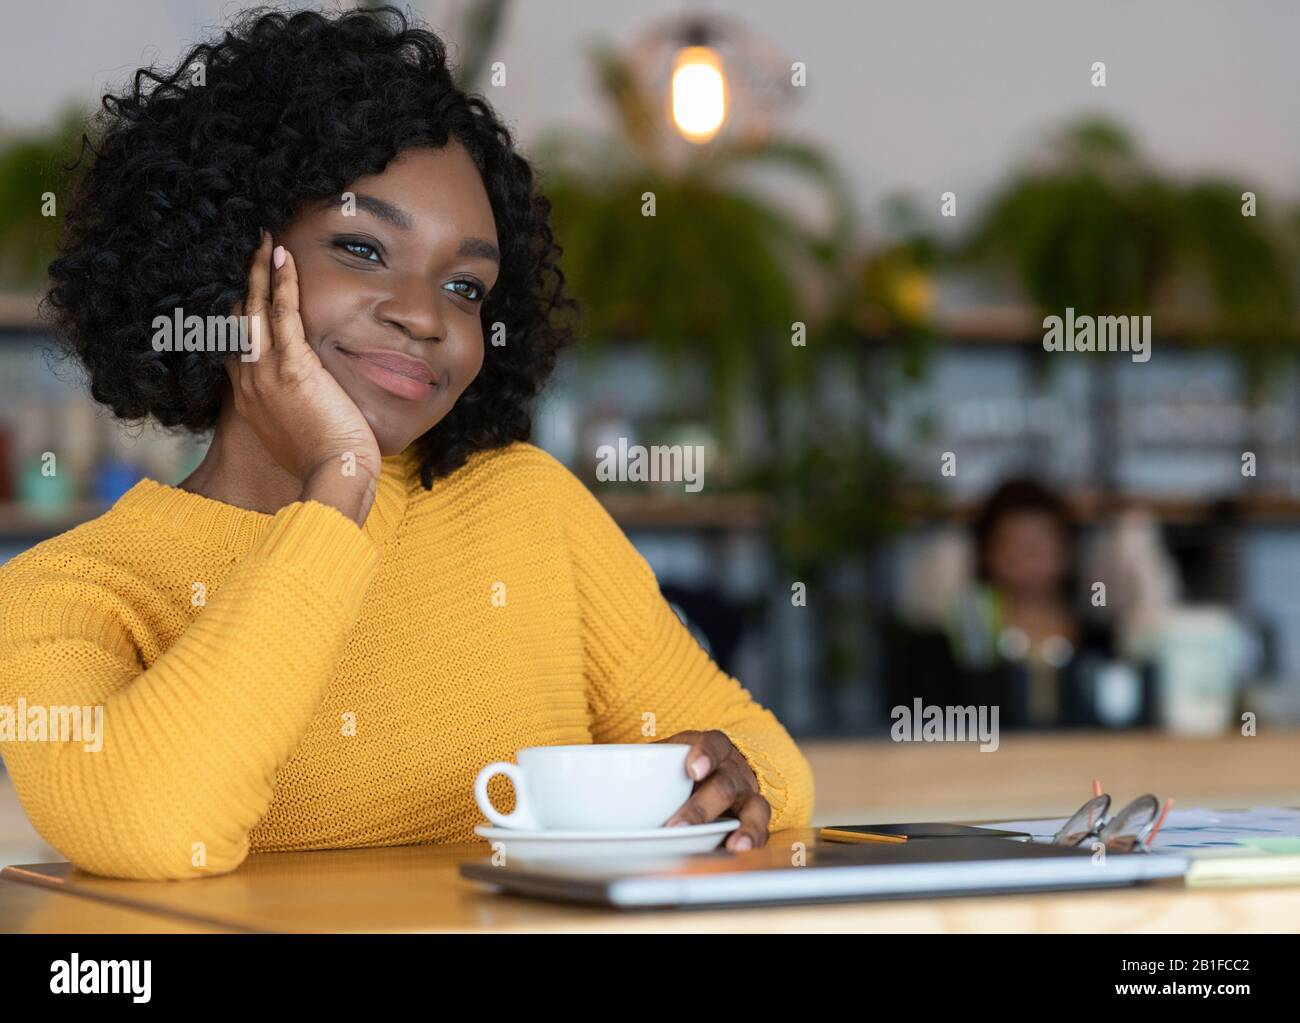 Une femme noire pensive qui a fait une pause café au café Banque D'Images